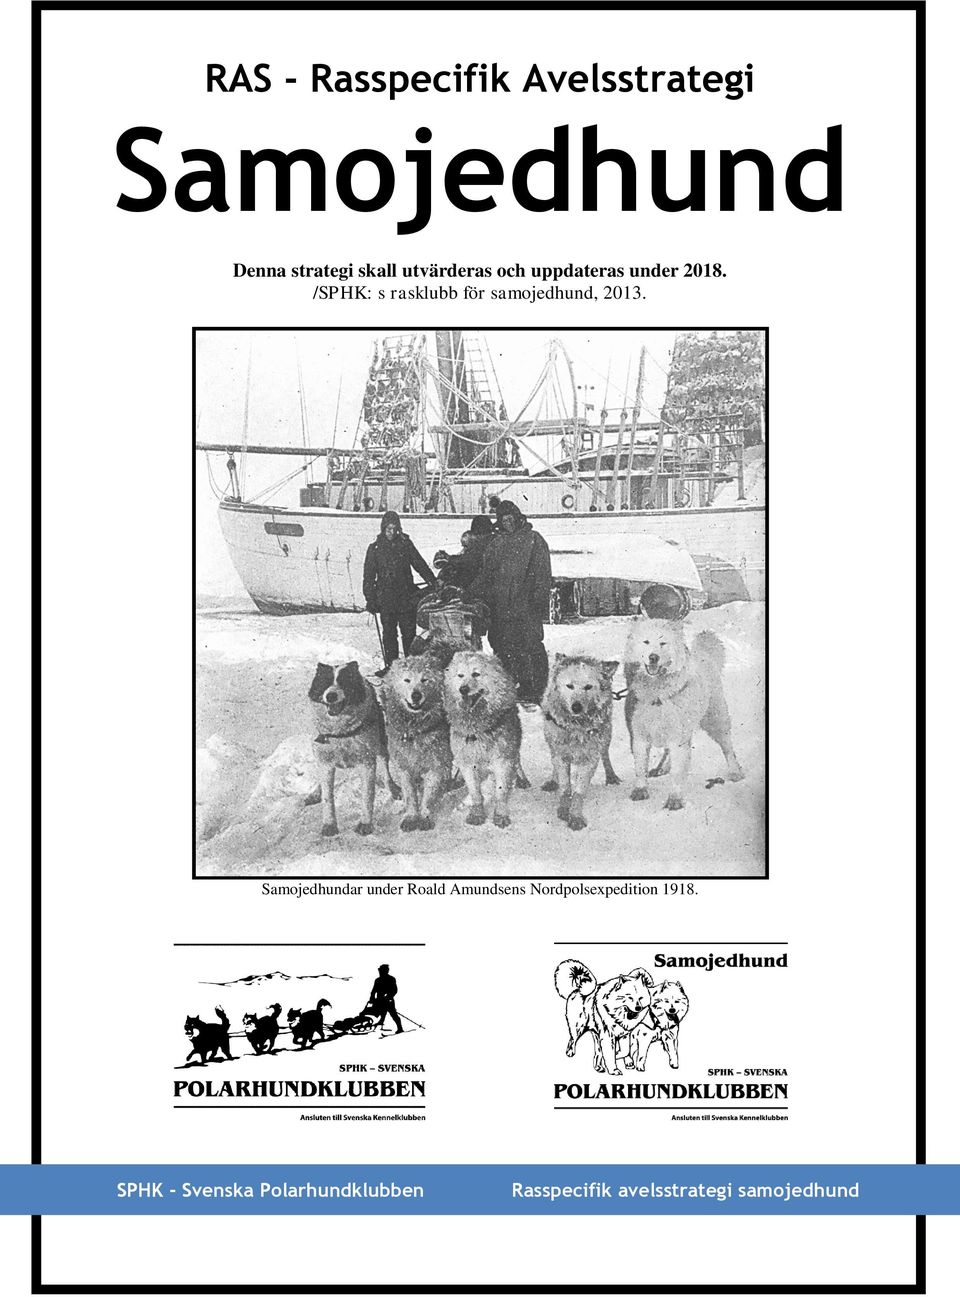 /SPHK: s rasklubb för samojedhund, 2013.